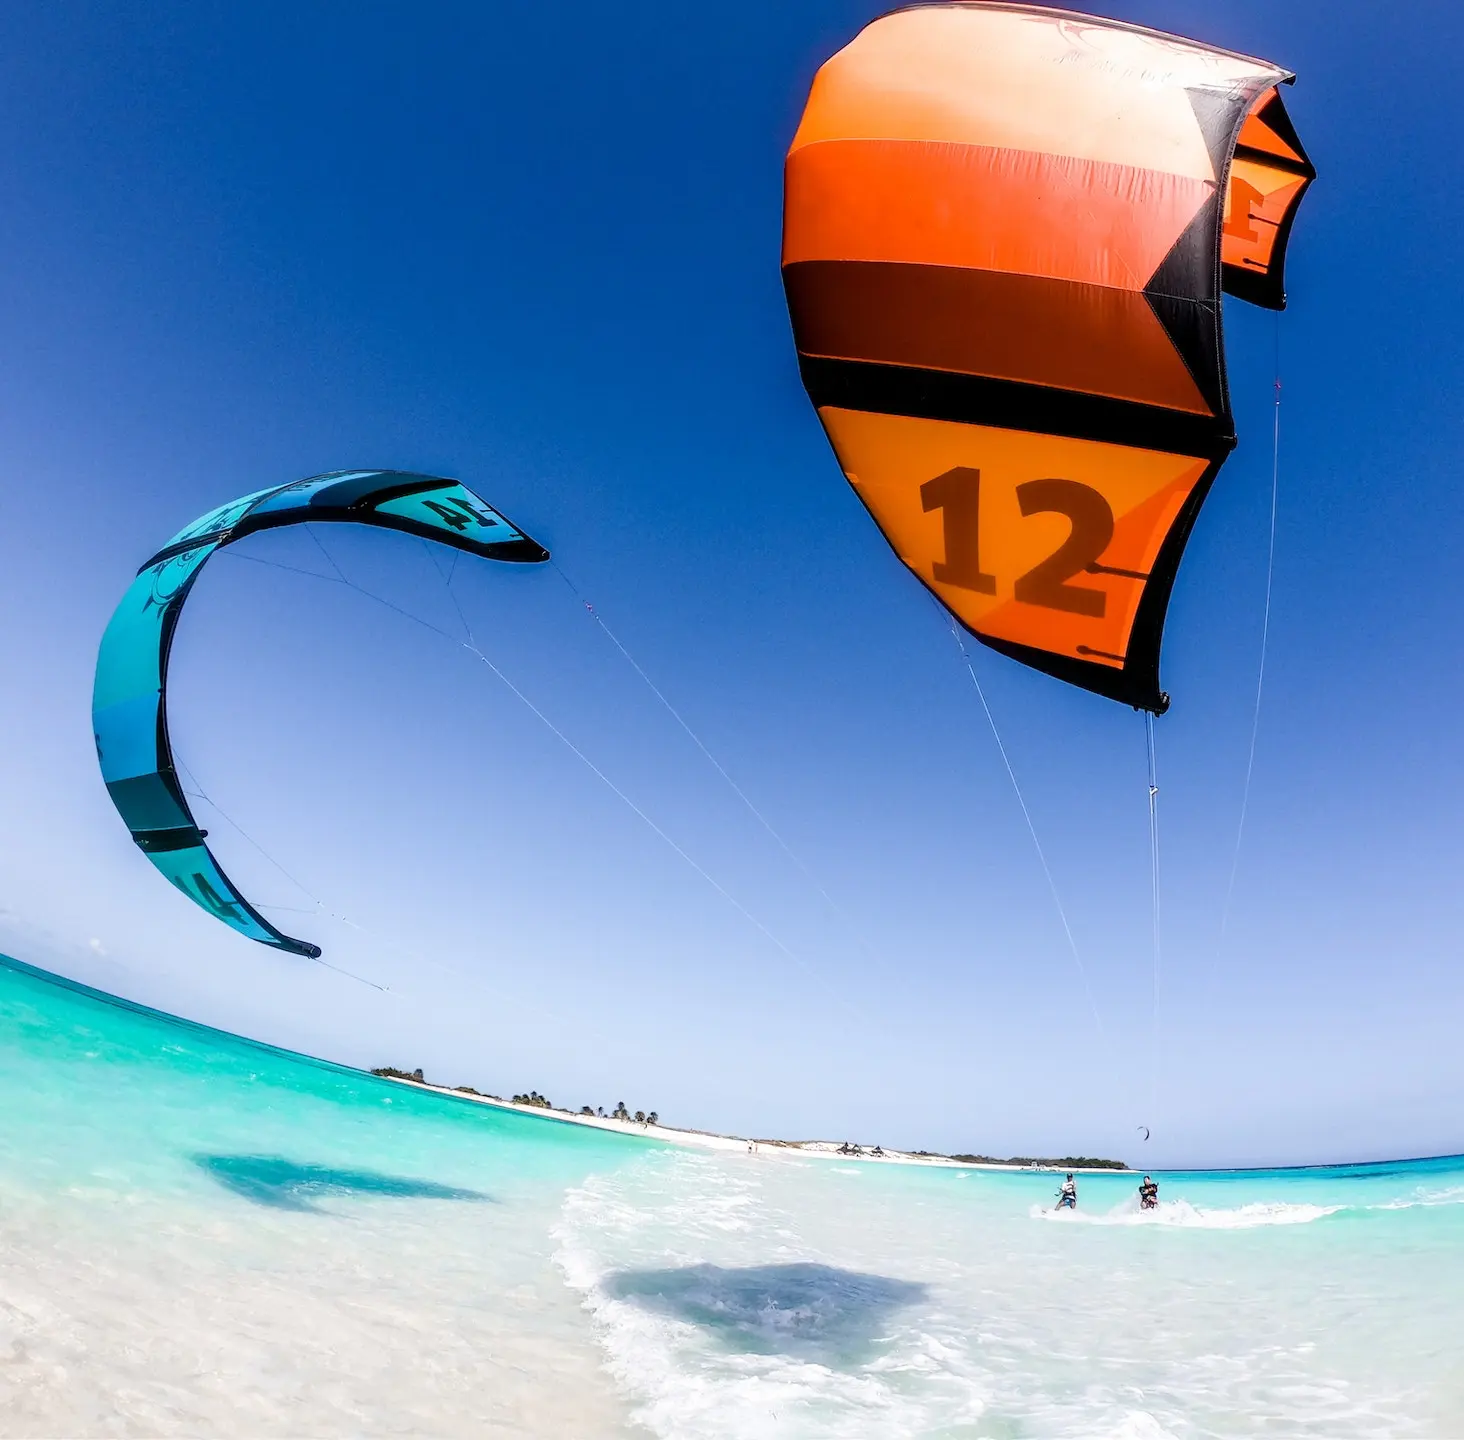 4 Linha Praia Verão Esporte Fora Fácil de Voar Kiting Atividade Power Sting Stunt Trick Set Kite Surf Equipment with Handles